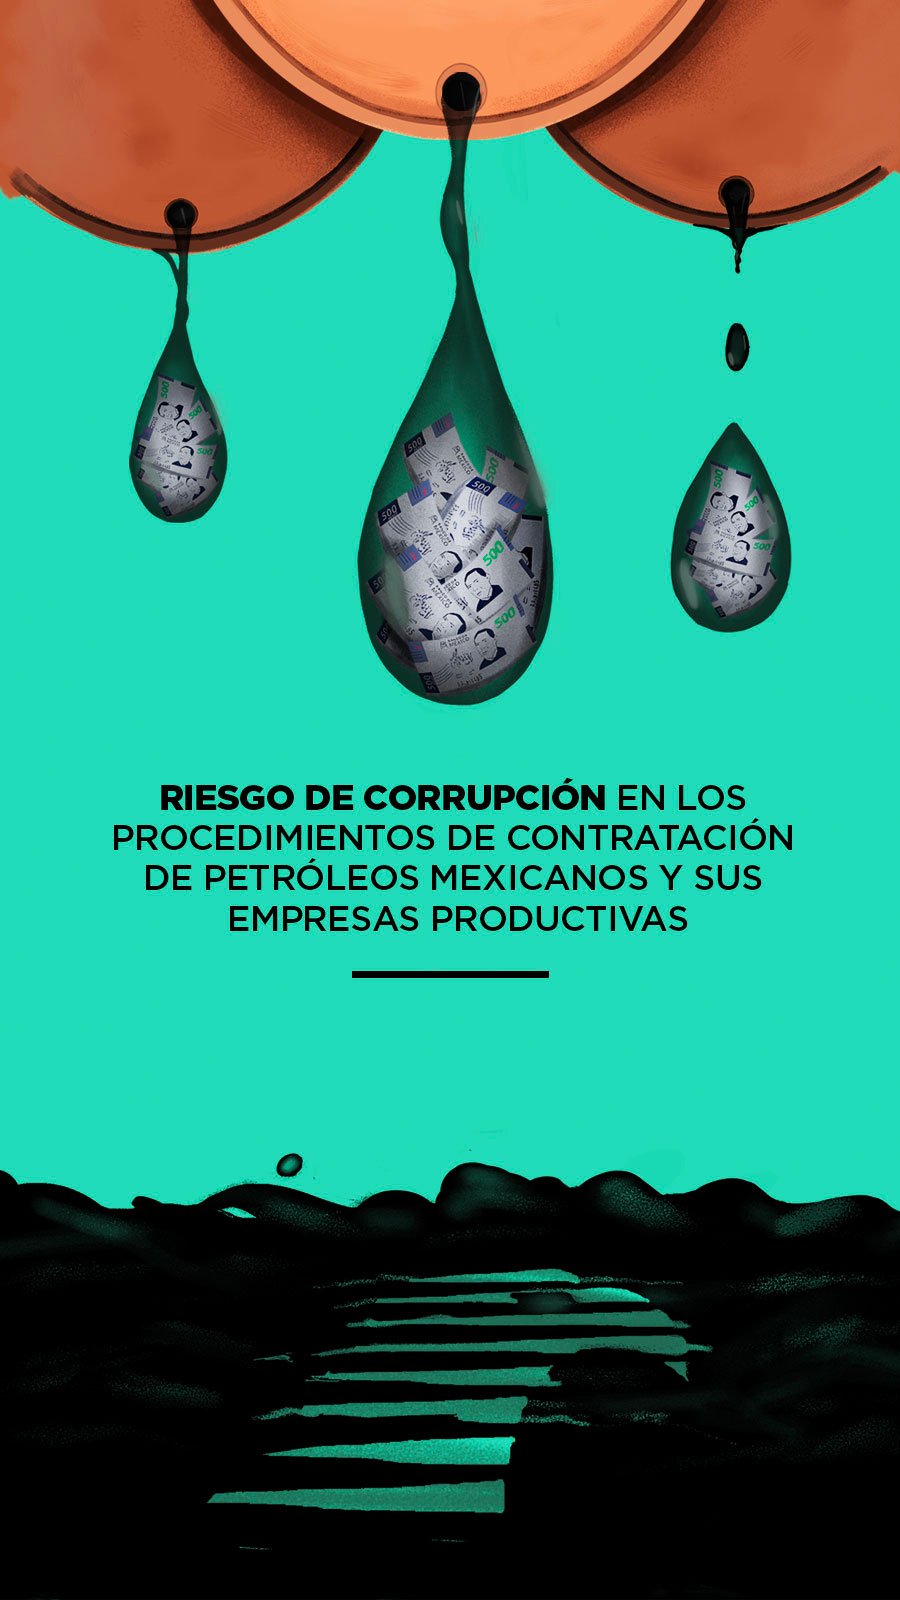 Riesgo de corrupción en los procedimientos de contratación de Petróleos Mexicanos y sus empresas productivas